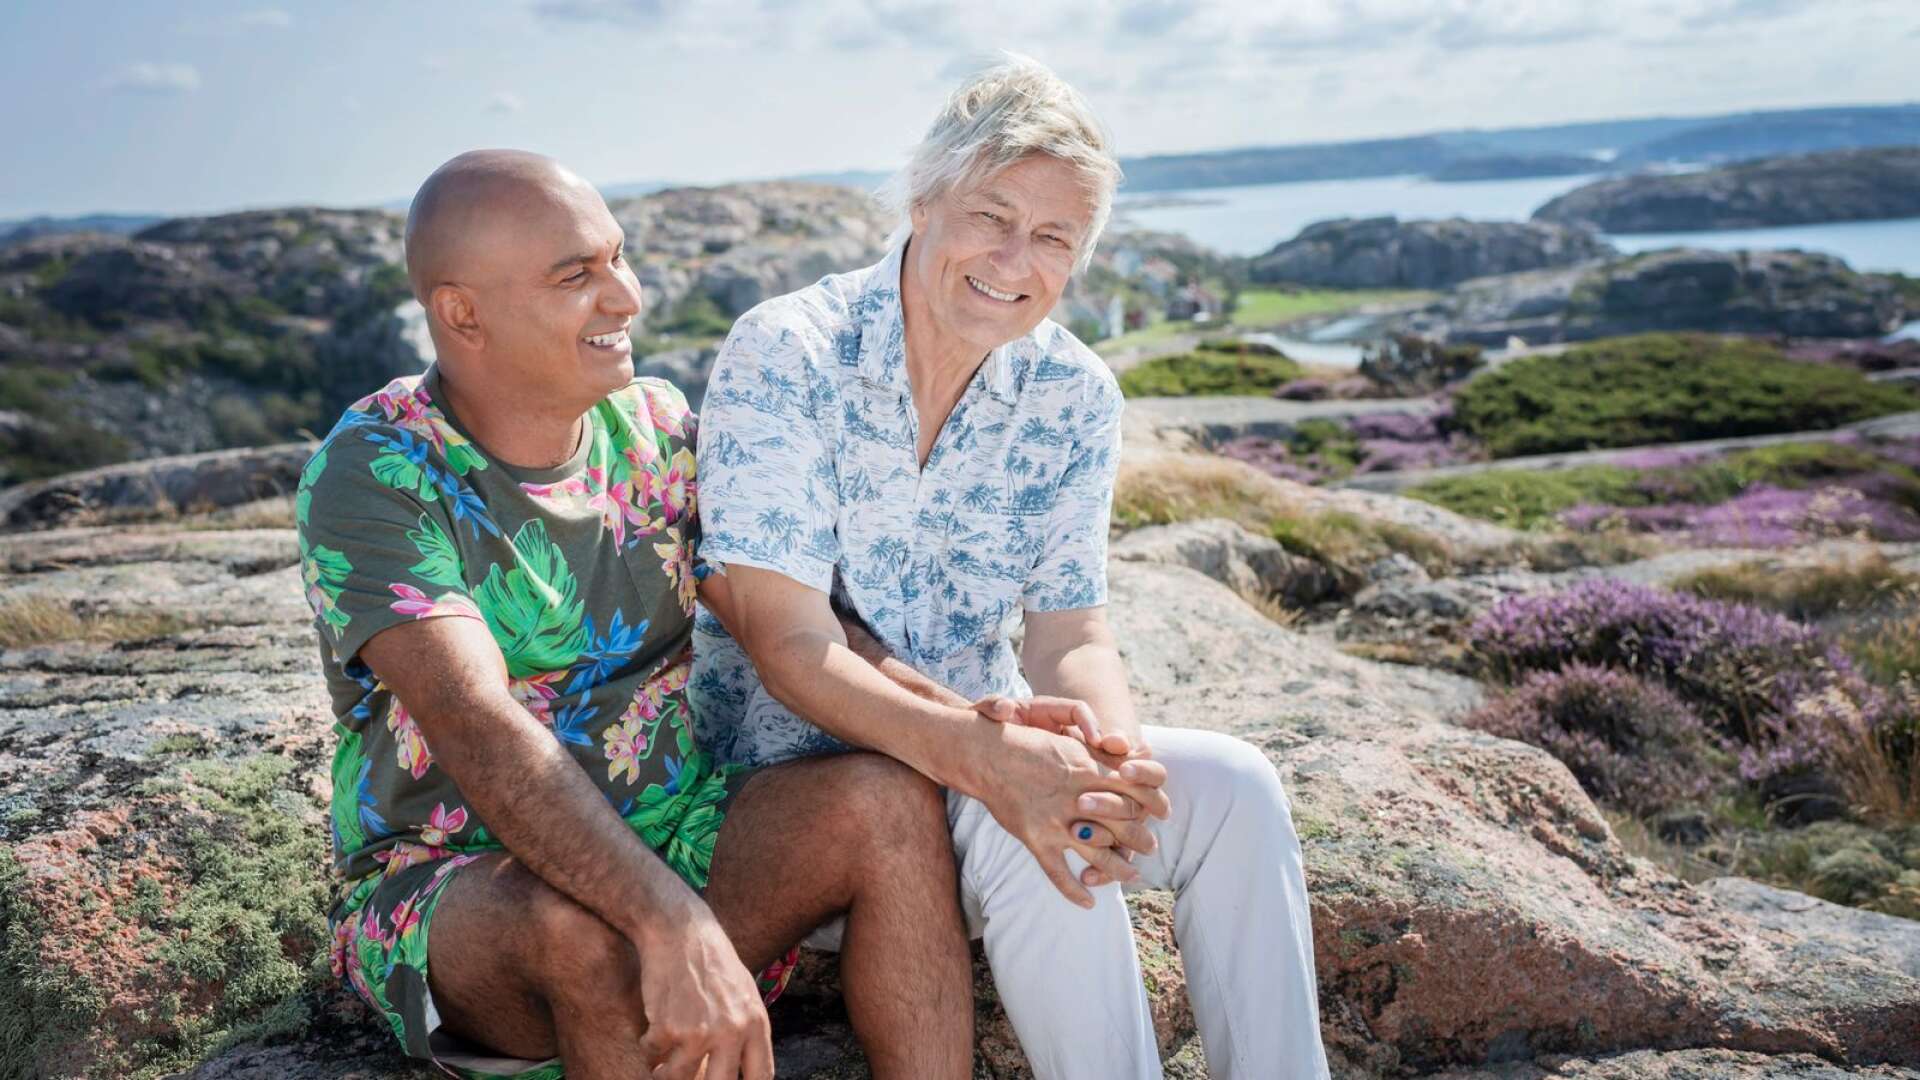 Junior och Lars Lerin är båda med i nya programmet Lerins sommarö, som sänds i SVT i höst.